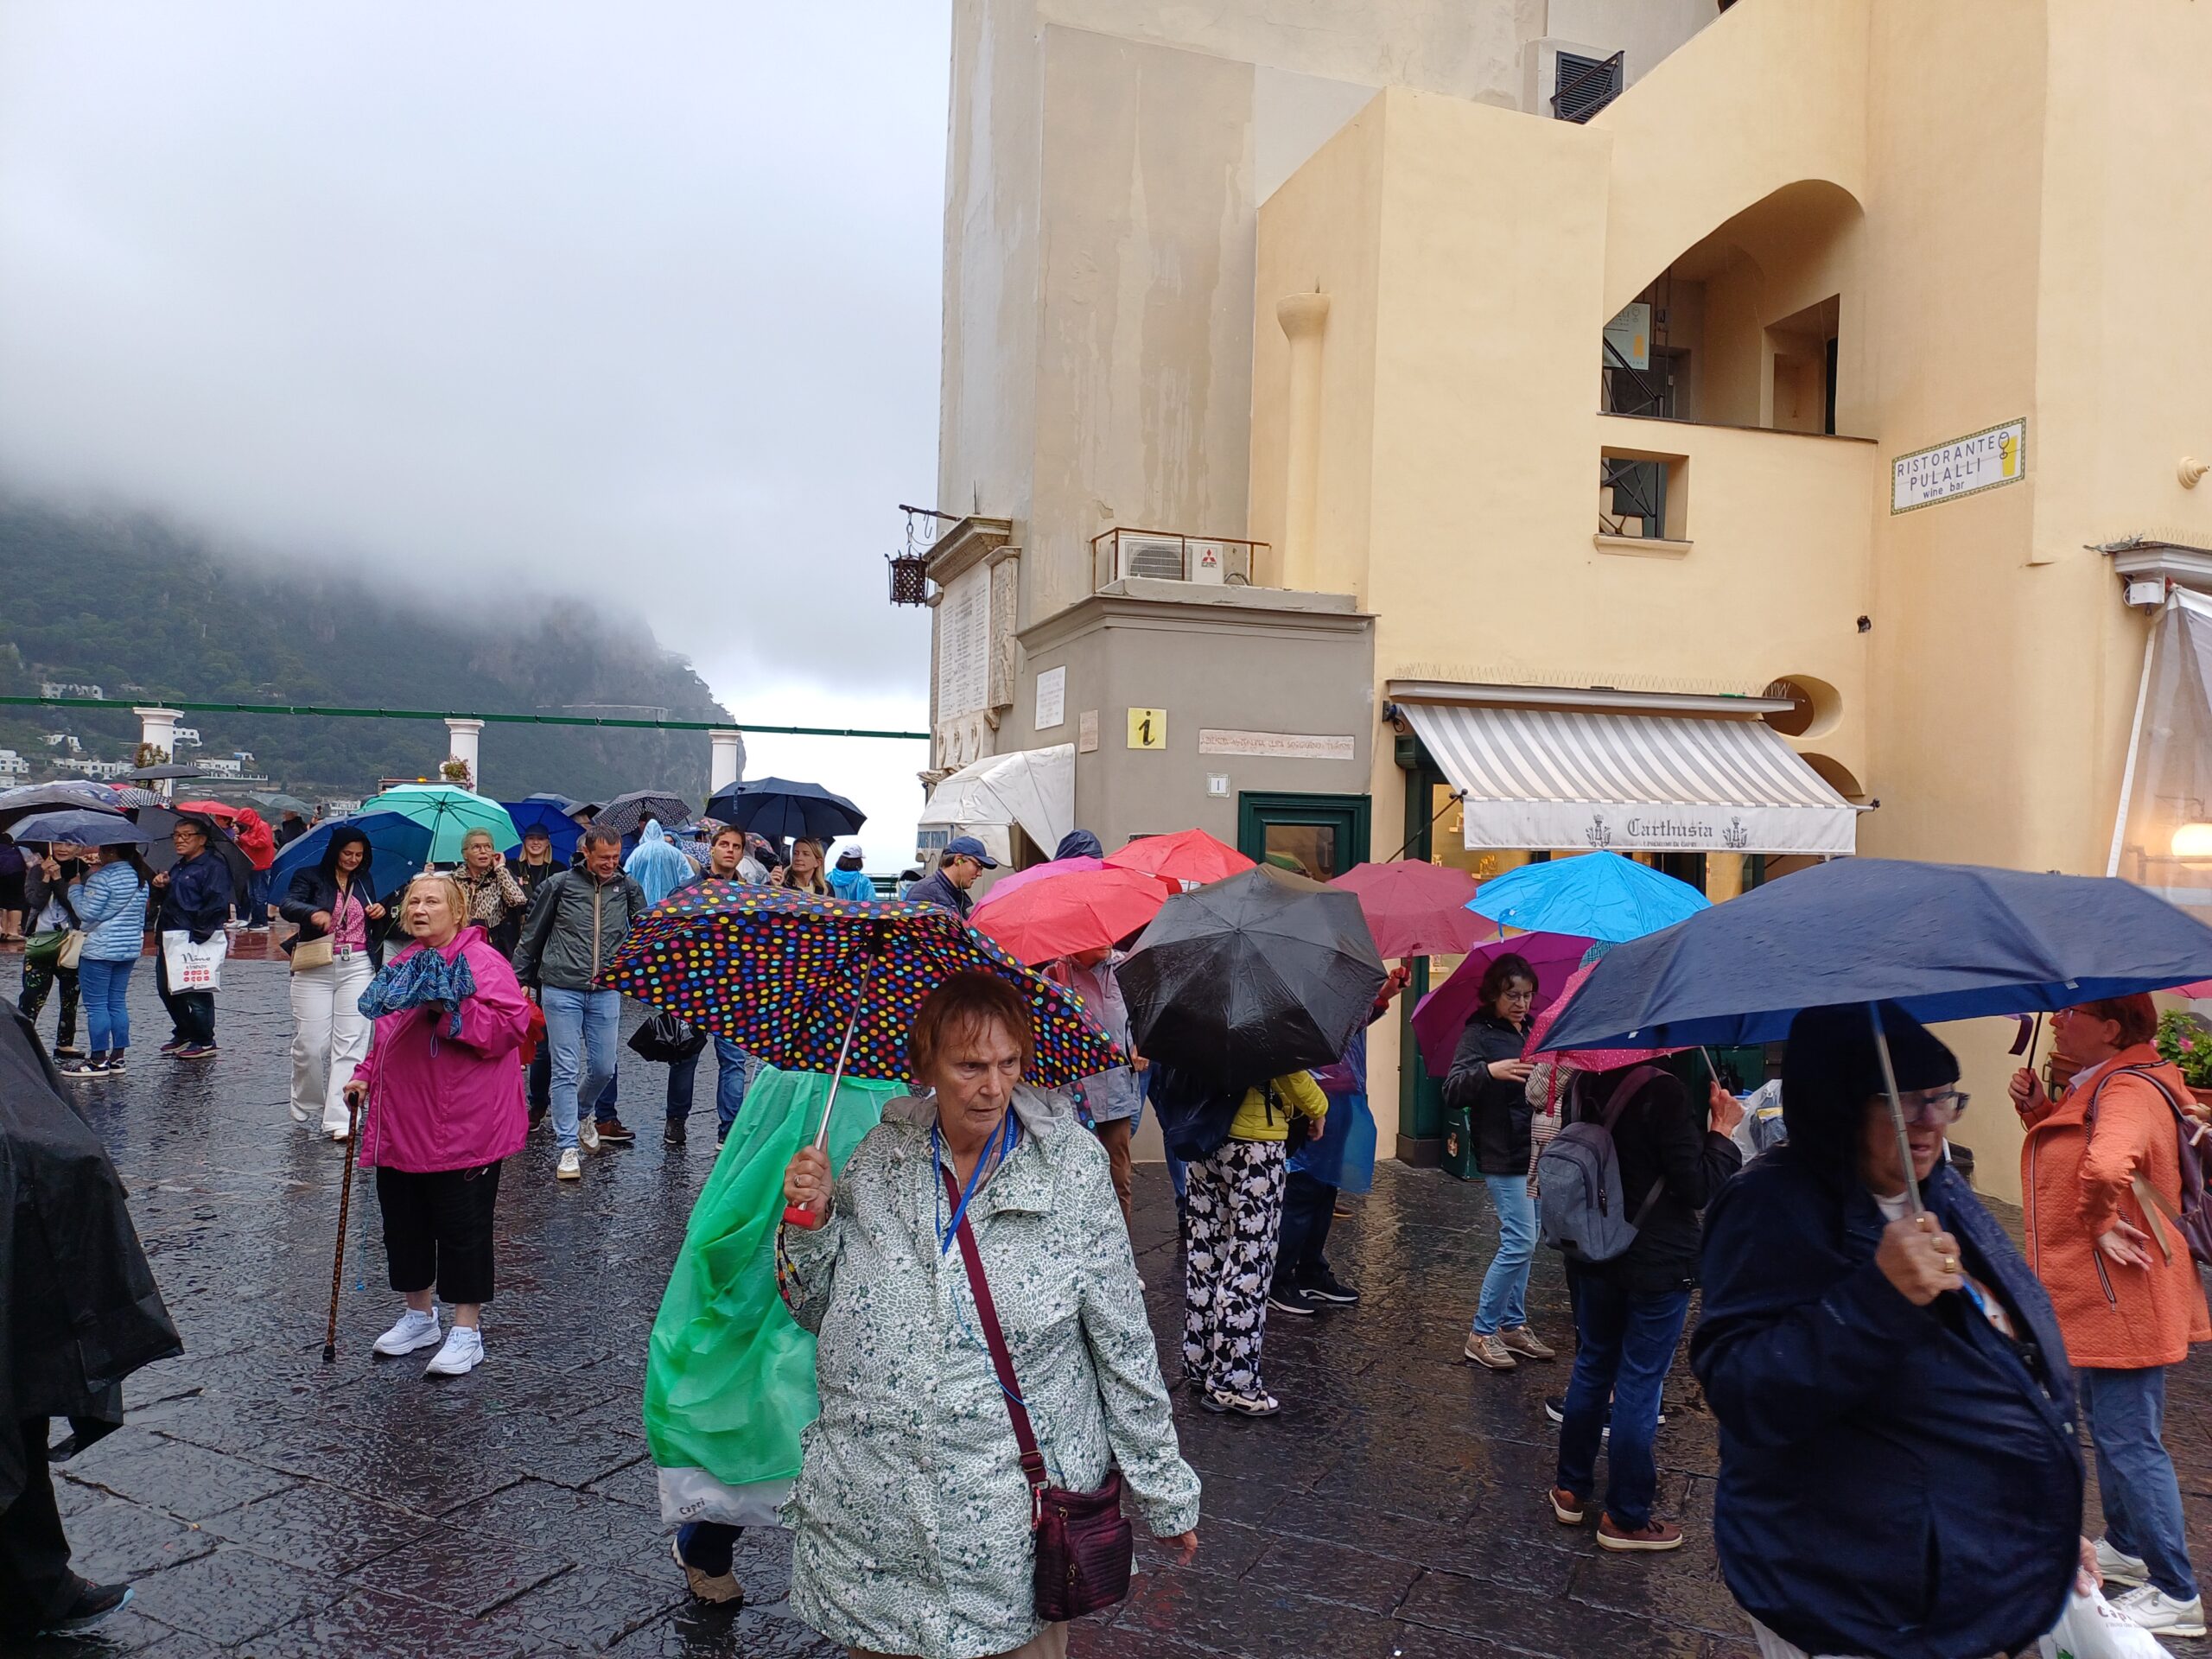 La pioggia autunnale non ferma i turisti: tanti gruppi a Capri nonostante il maltempo